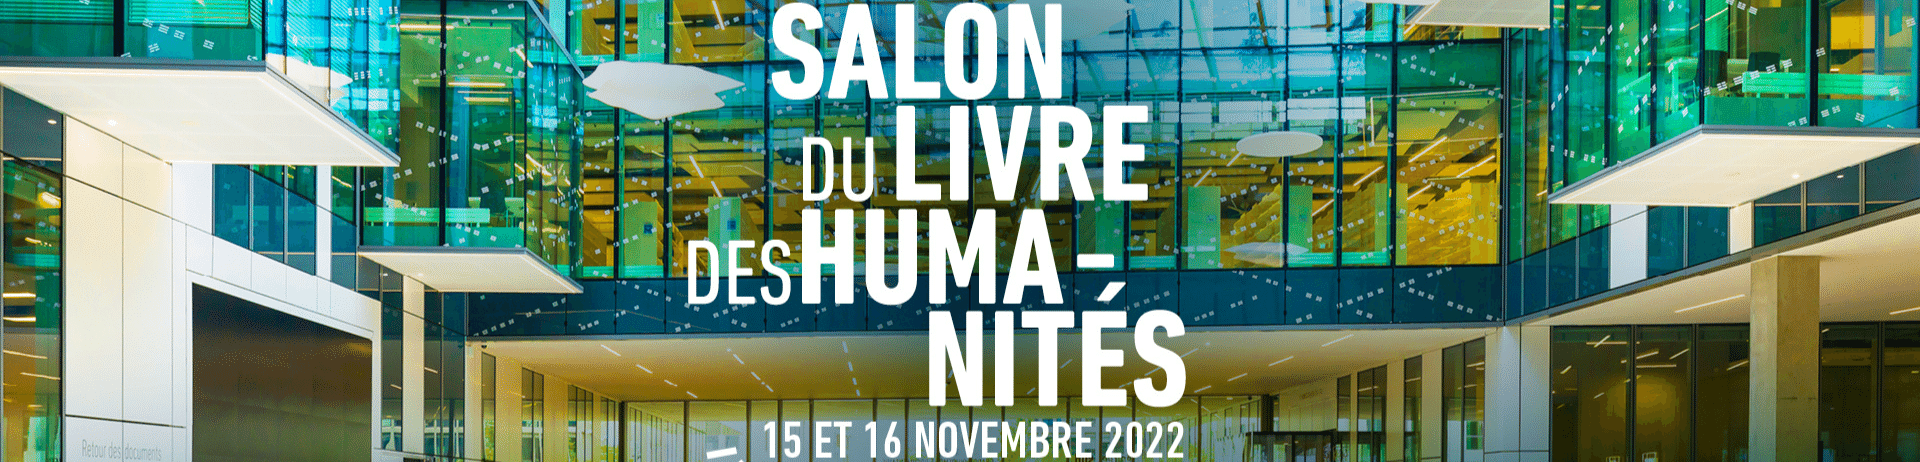 Salon du livre des humanités 15 et 16 novembre 2022